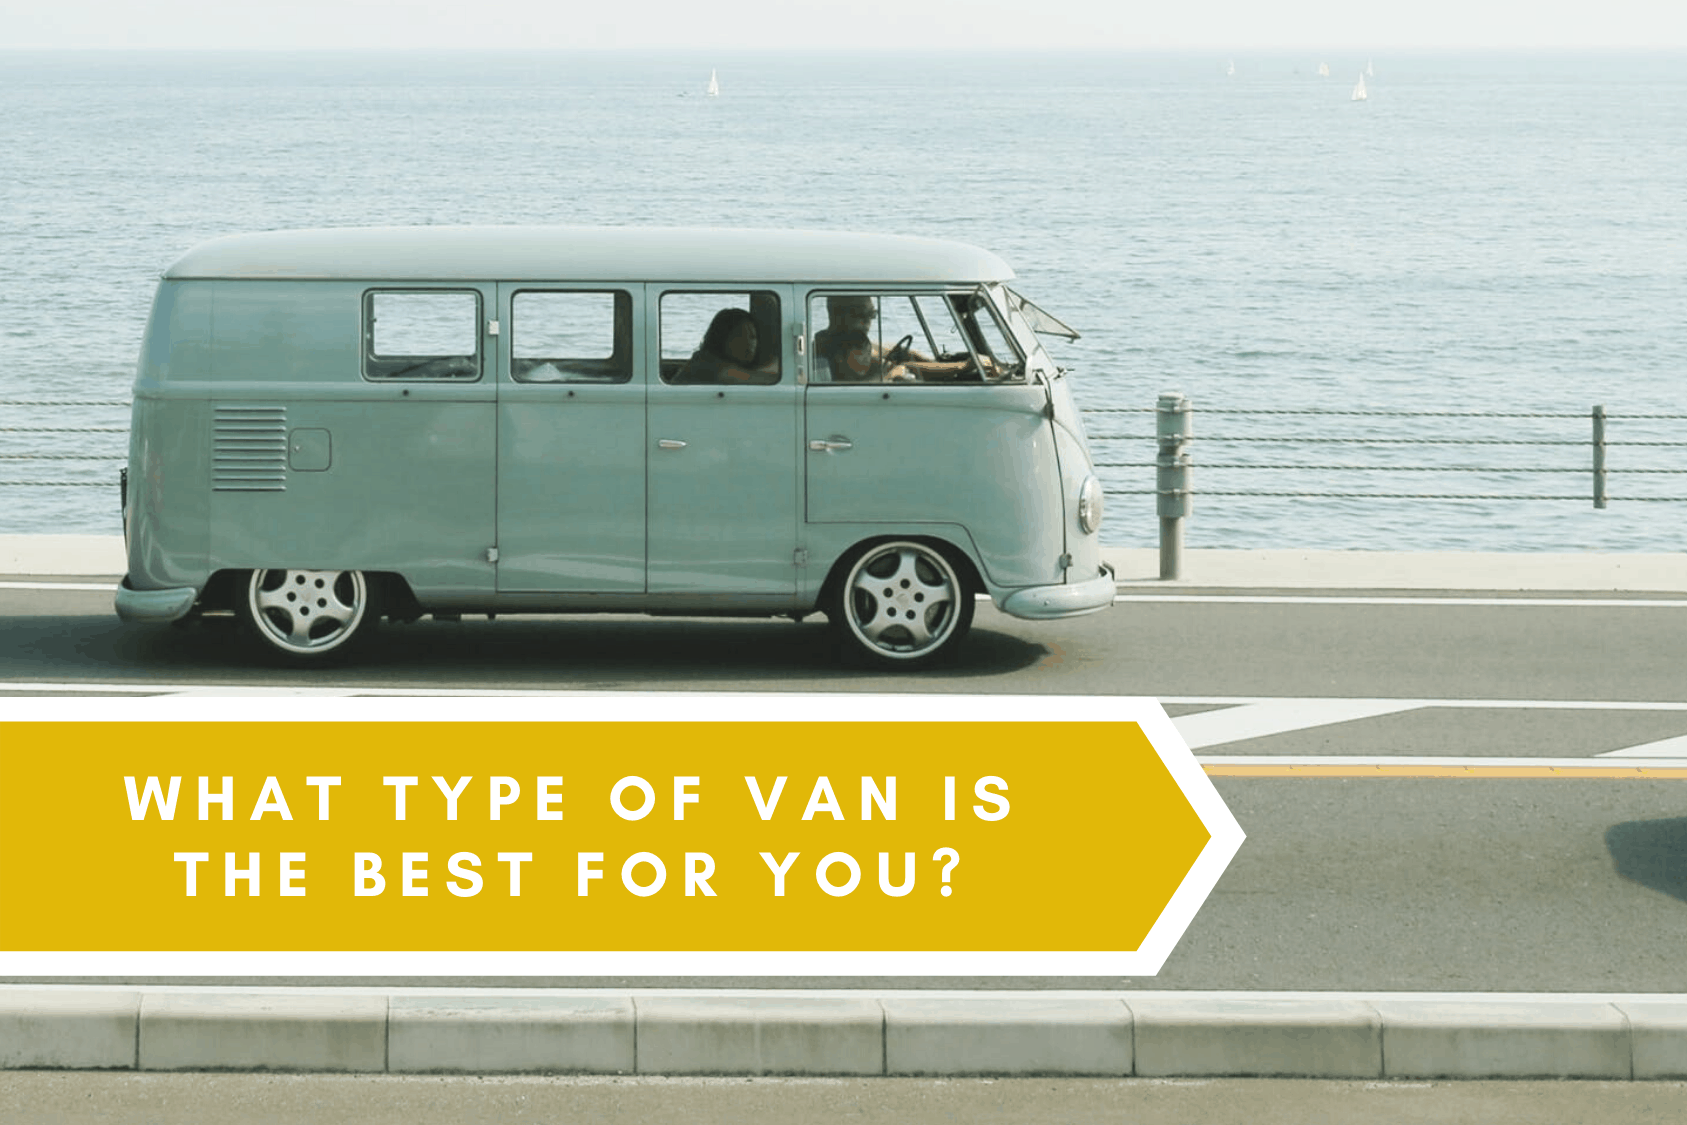 Best Van for You